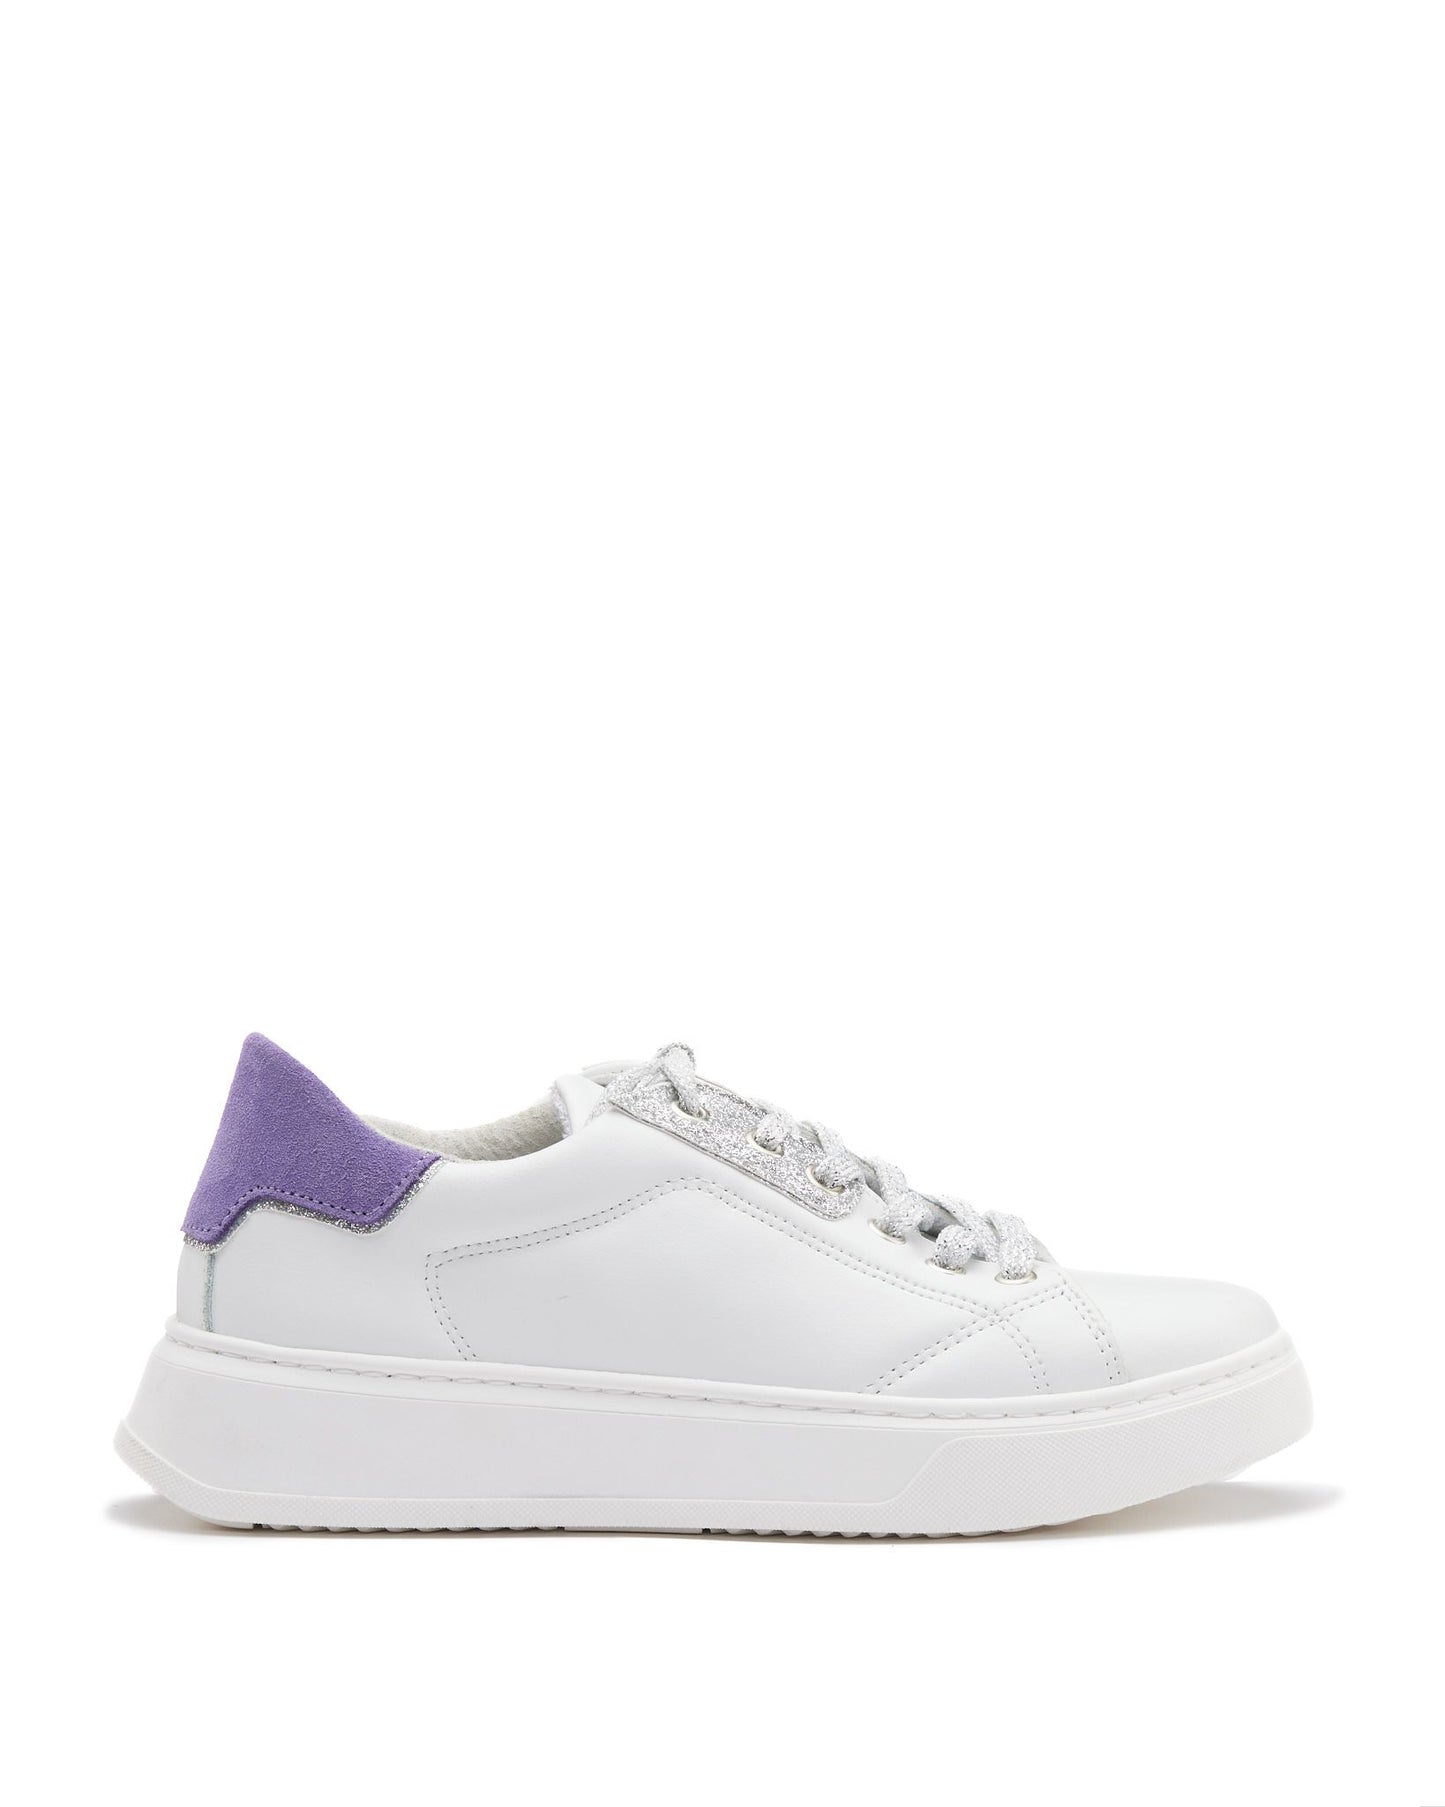 Sneakers in pelle bianca tallonetta lilla -DORA1BL